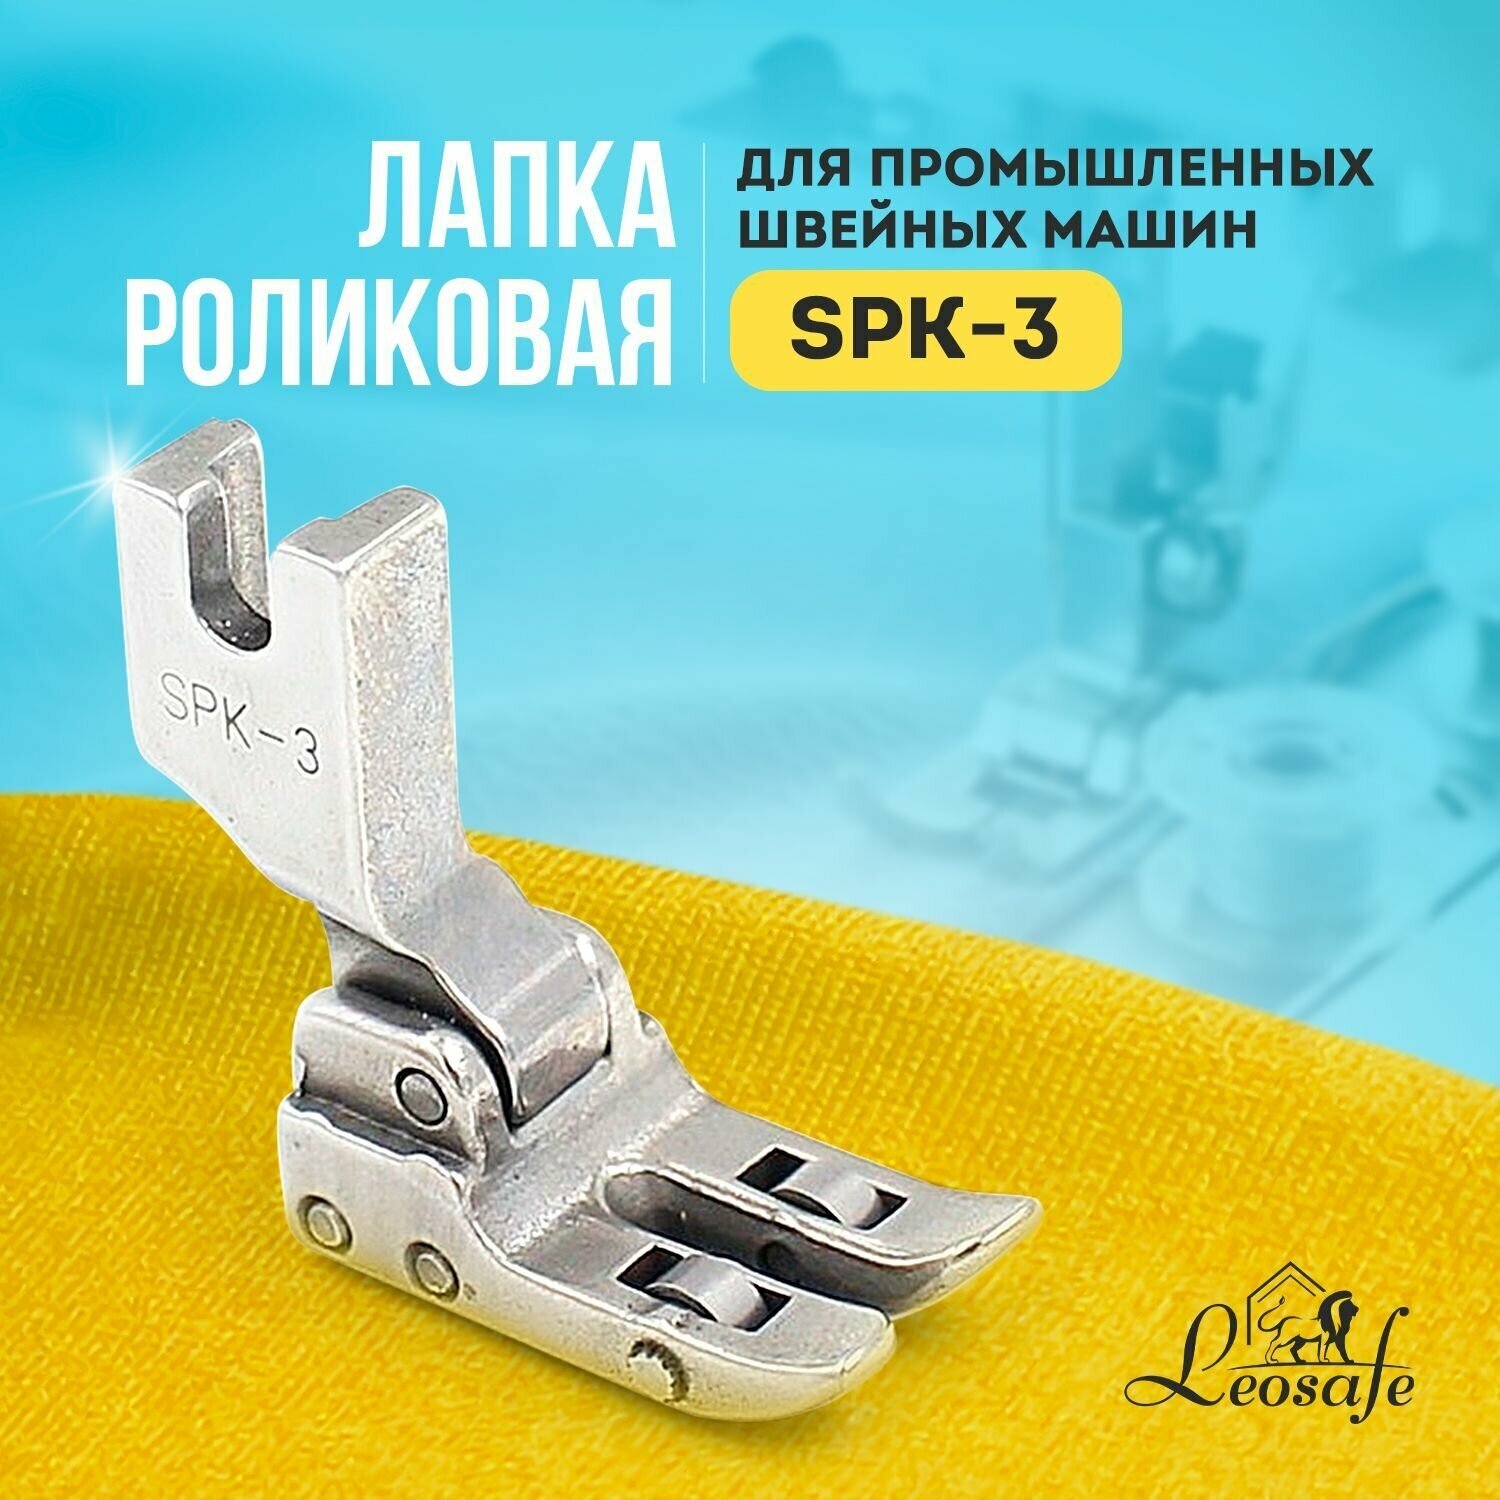 Роликовая швейная лапка SPK-3 для работы с кожей для промышленных швейных машин инструмент для творчества шитья и рукоделия